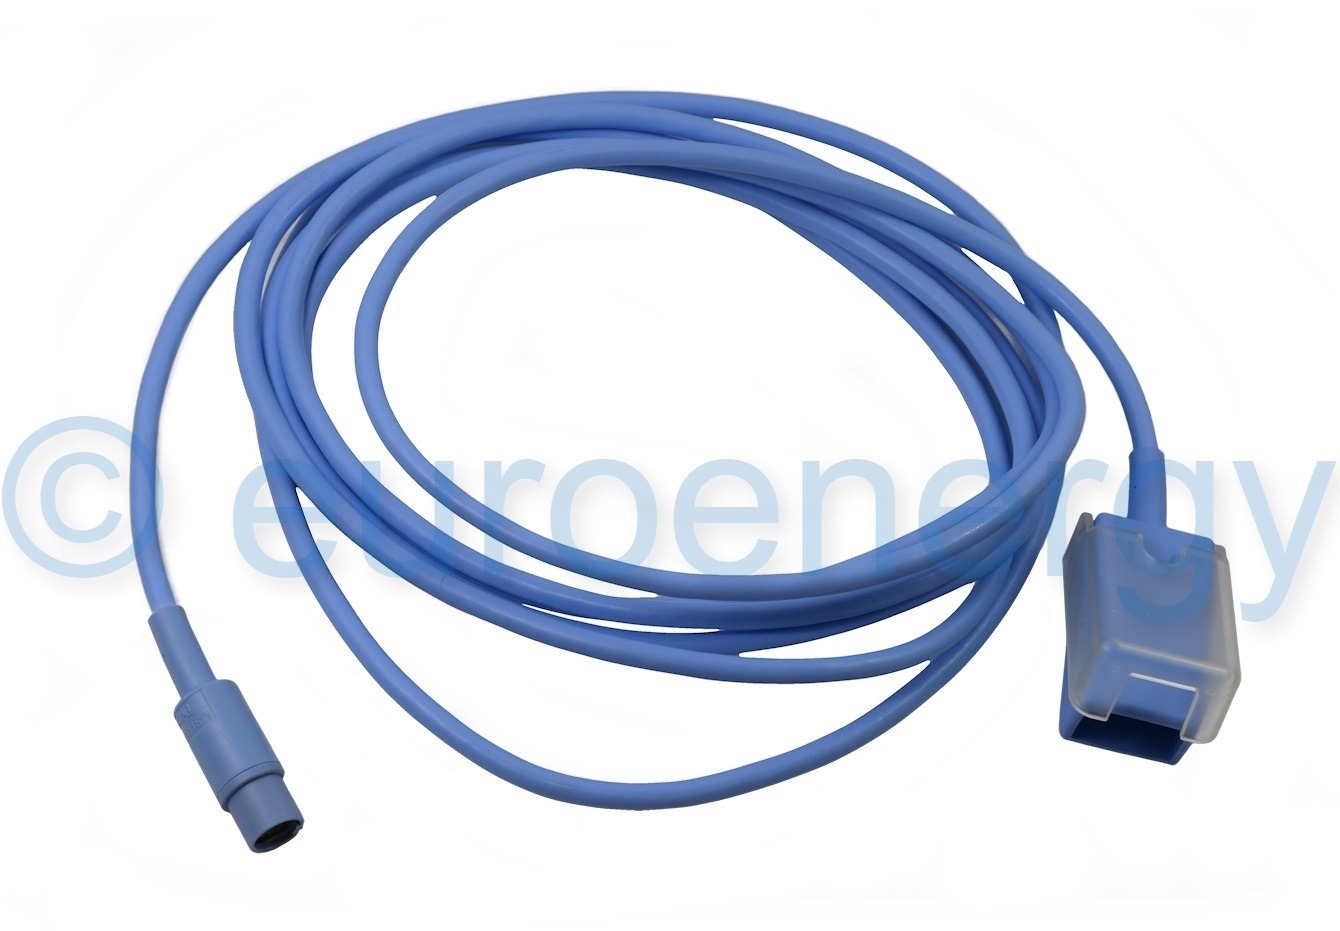 Draeger SpO2 Intermediate Cable MS17330 Original Medical Accessory